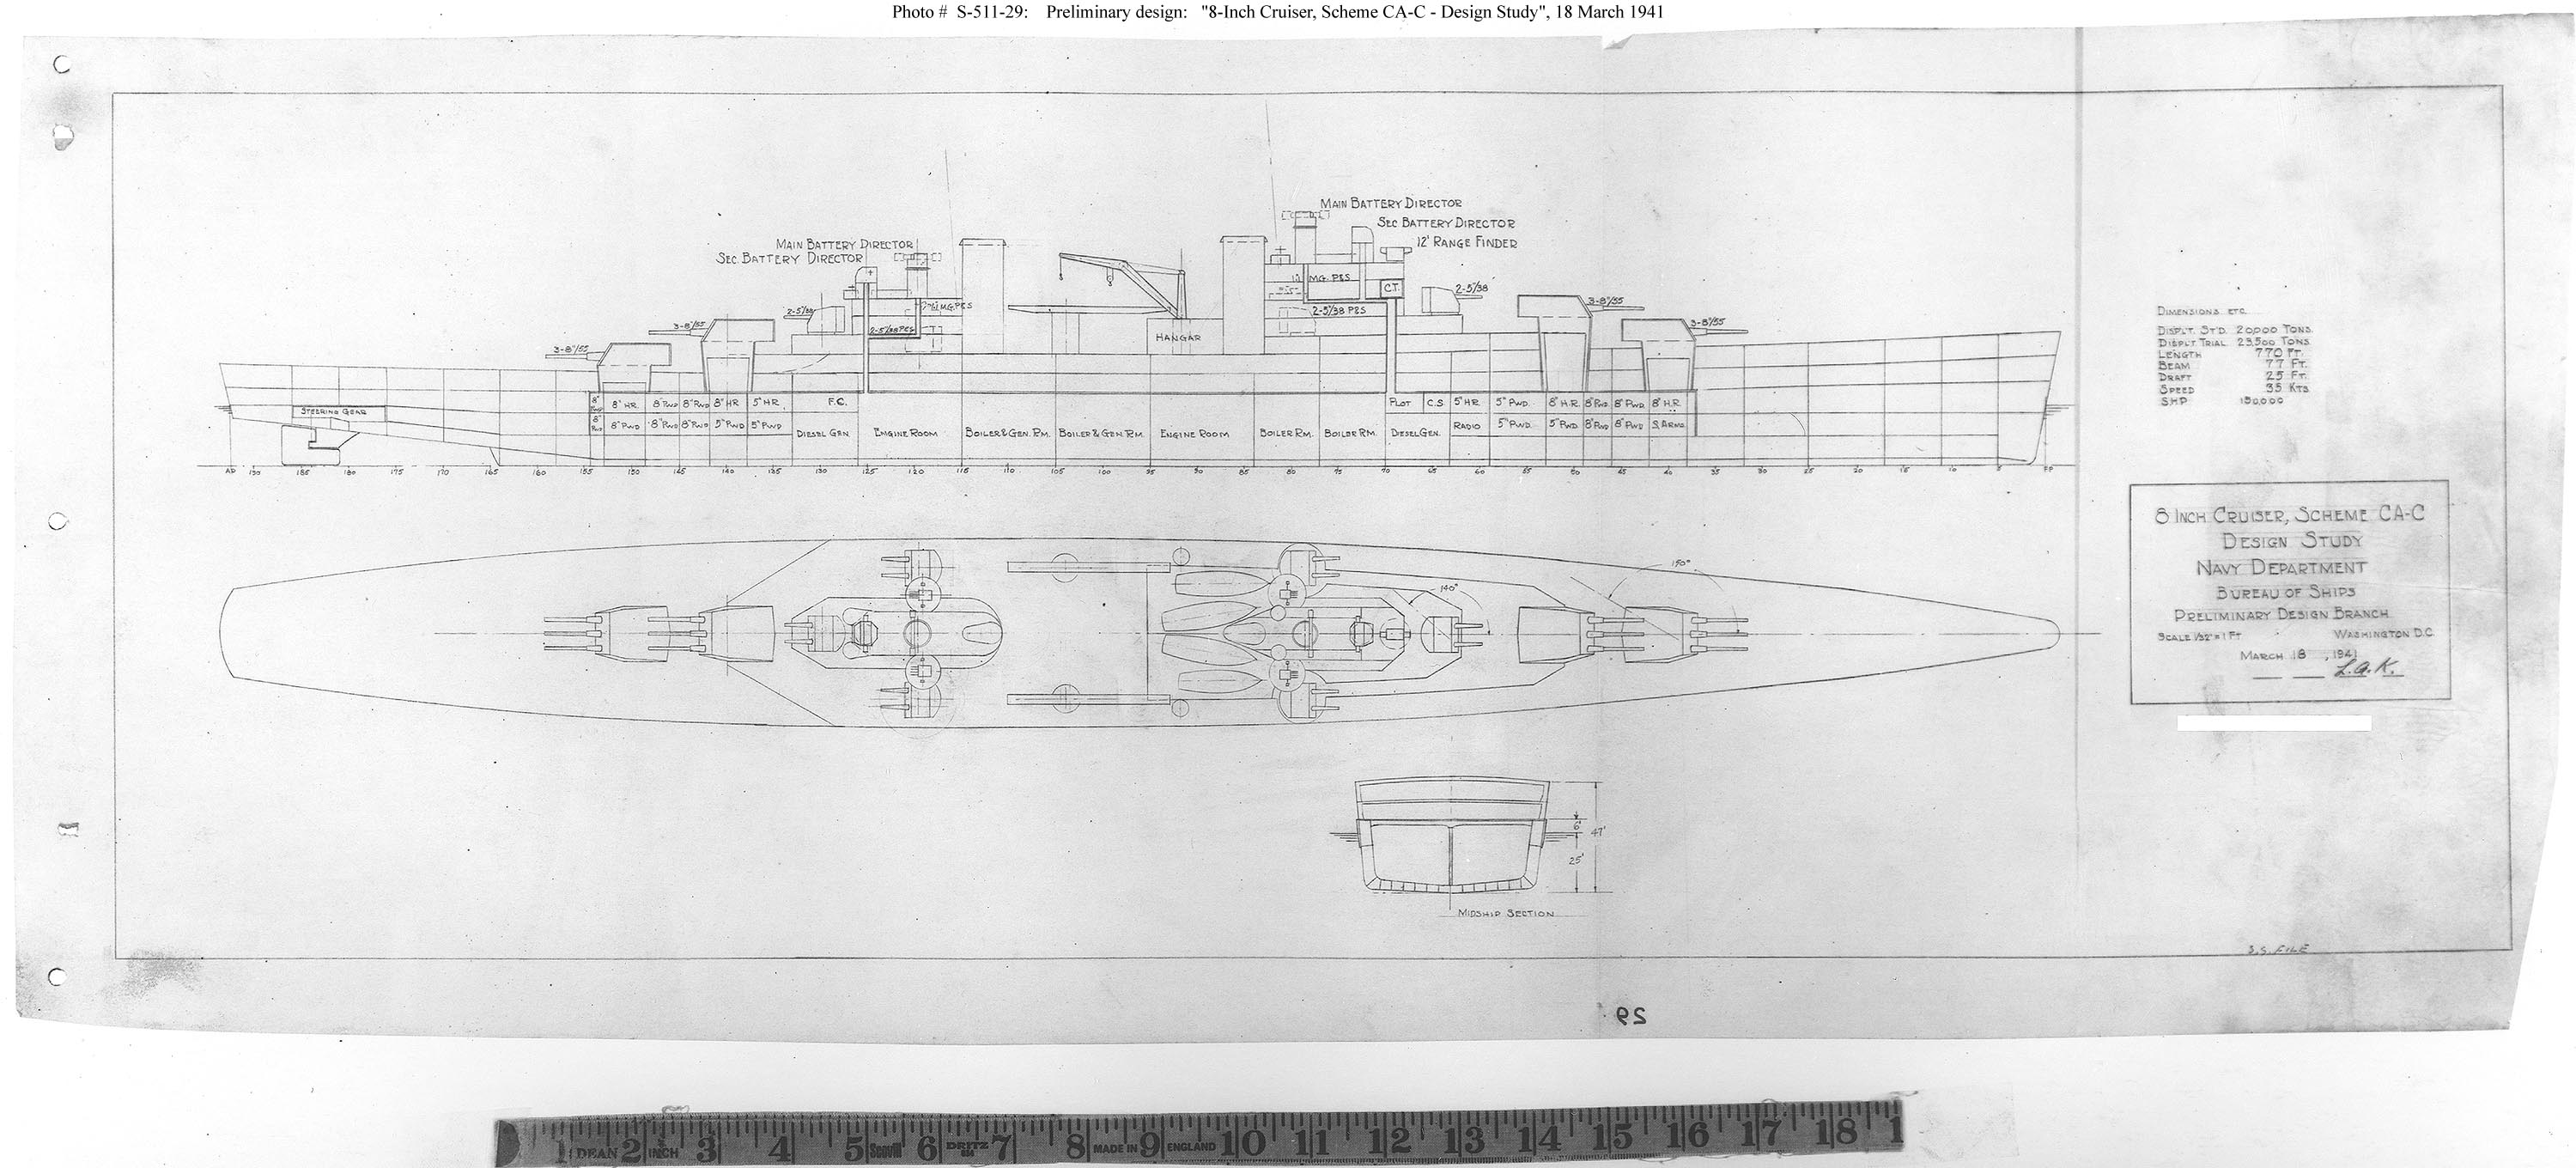 8 inch cruiser scheme CA-C 18 March 1941